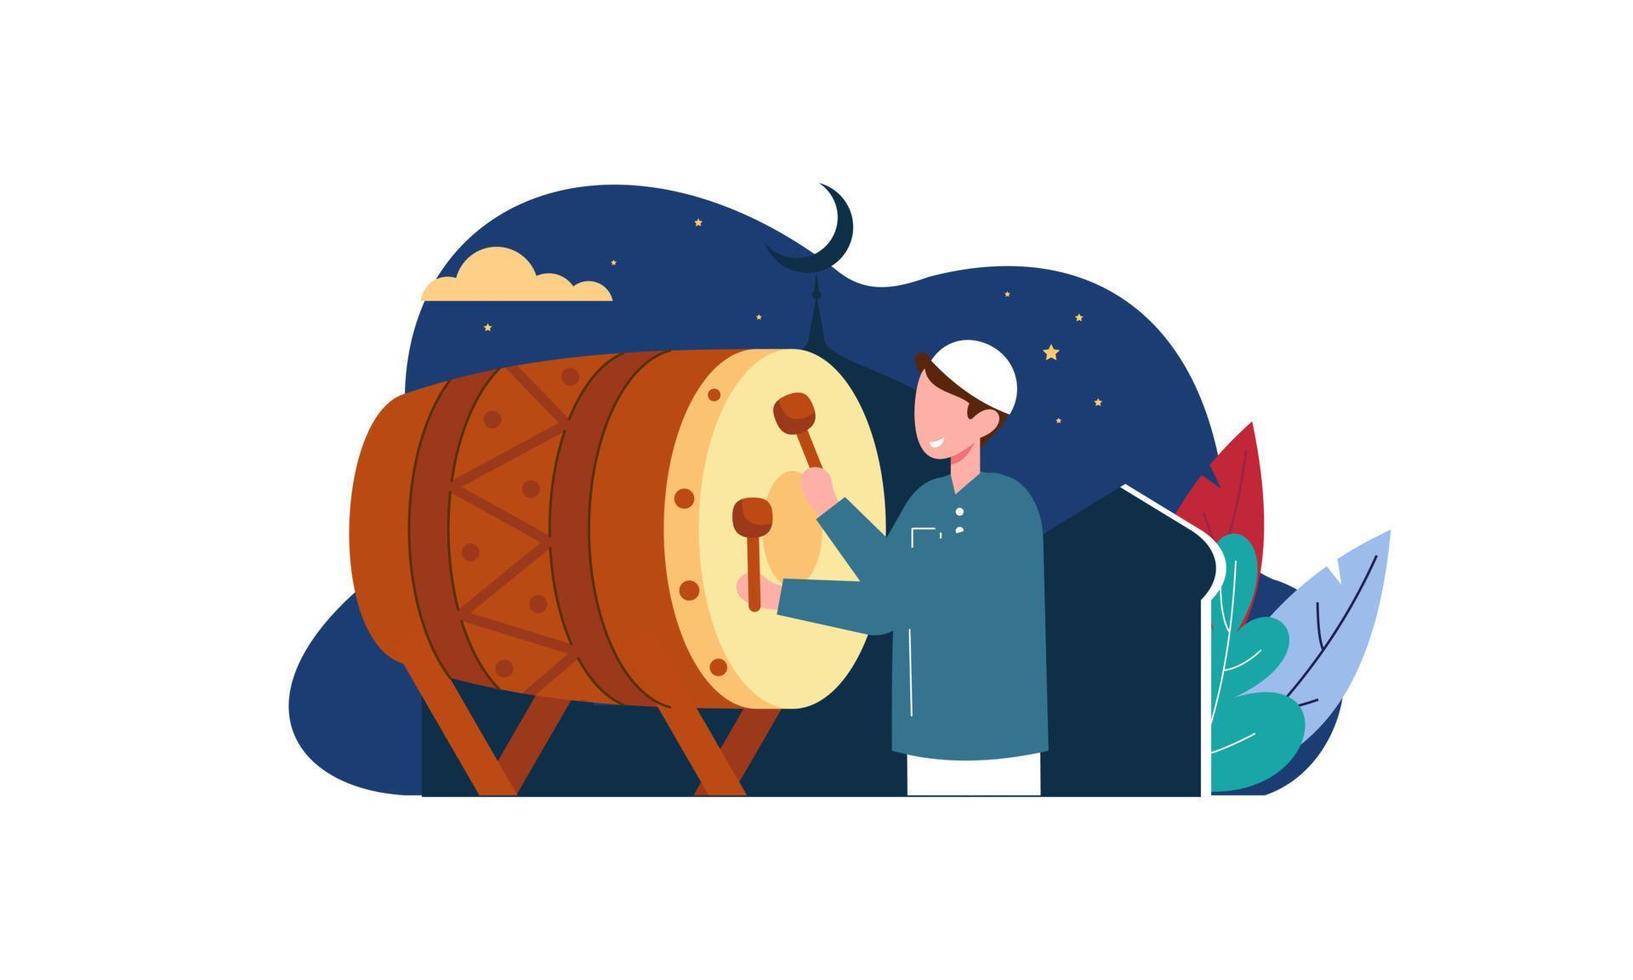 glad eid mubarak, ramadan mubarak hälsningskoncept med människor karaktär illustration vektor